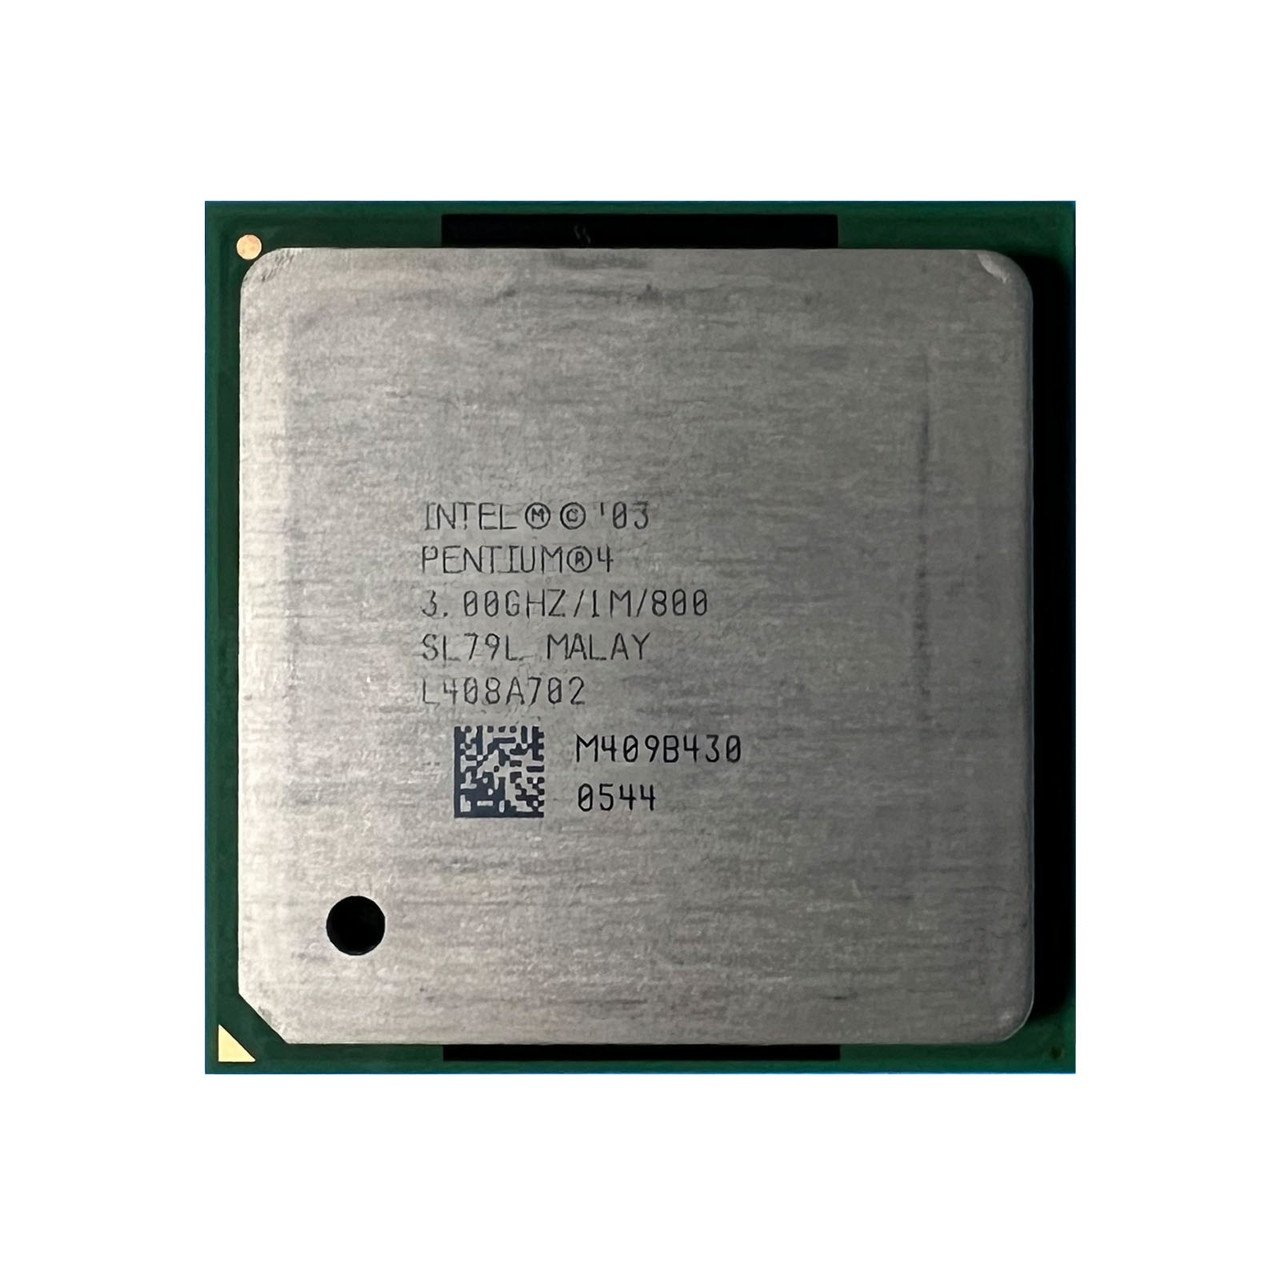 Intel SL79L P4 530/530J 3.0Ghz 1MB 800FSB Processor